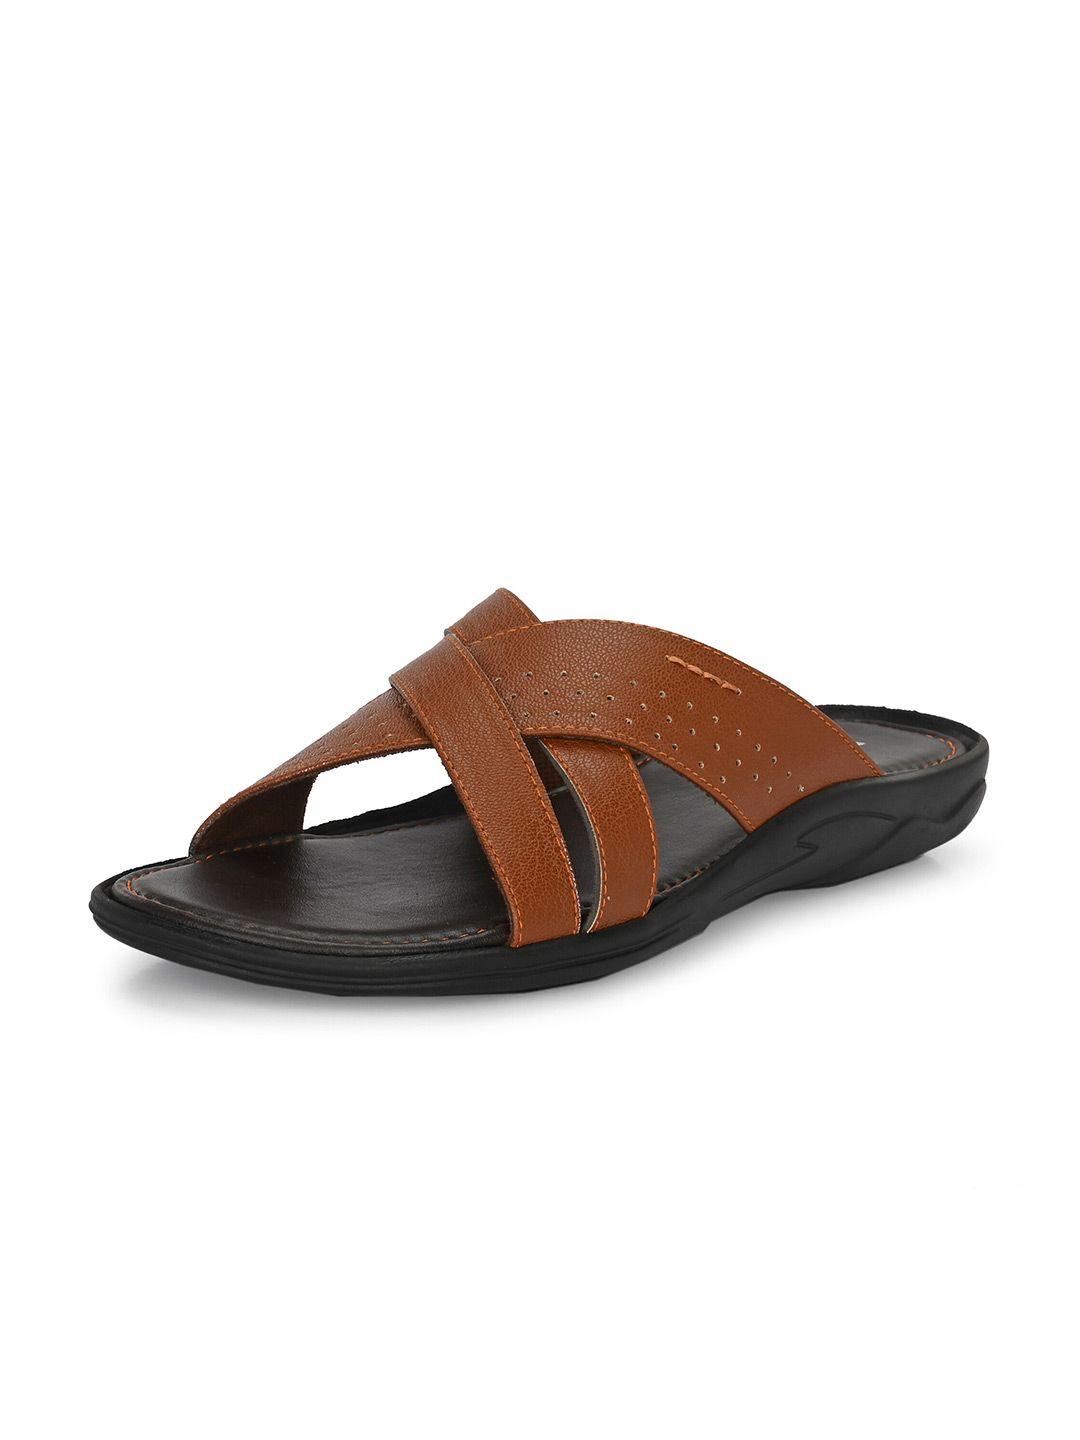 provogue-men-tan-comfort-sandals